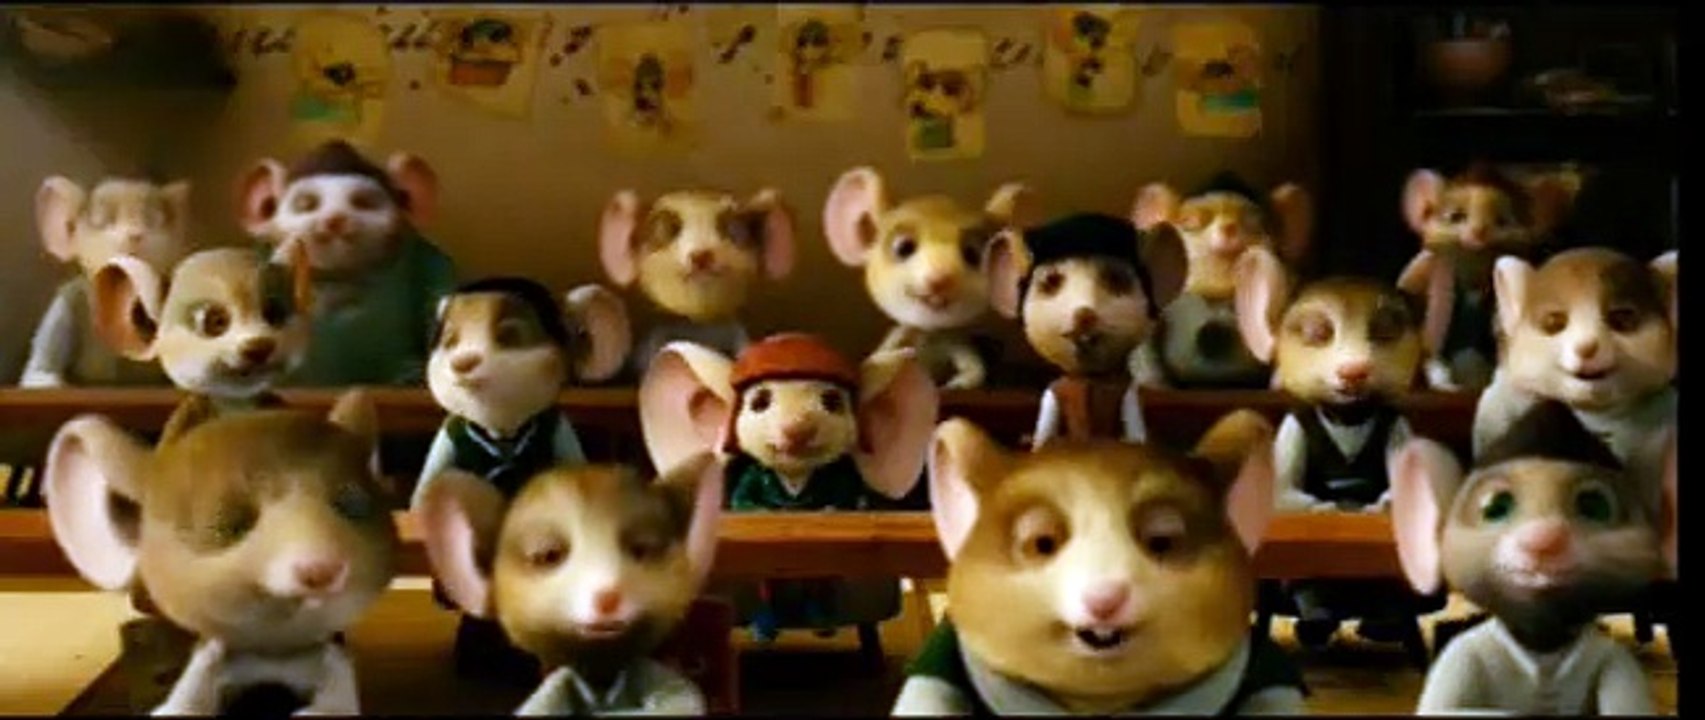 Despereaux - Der kleine Mäuseheld Trailer DF